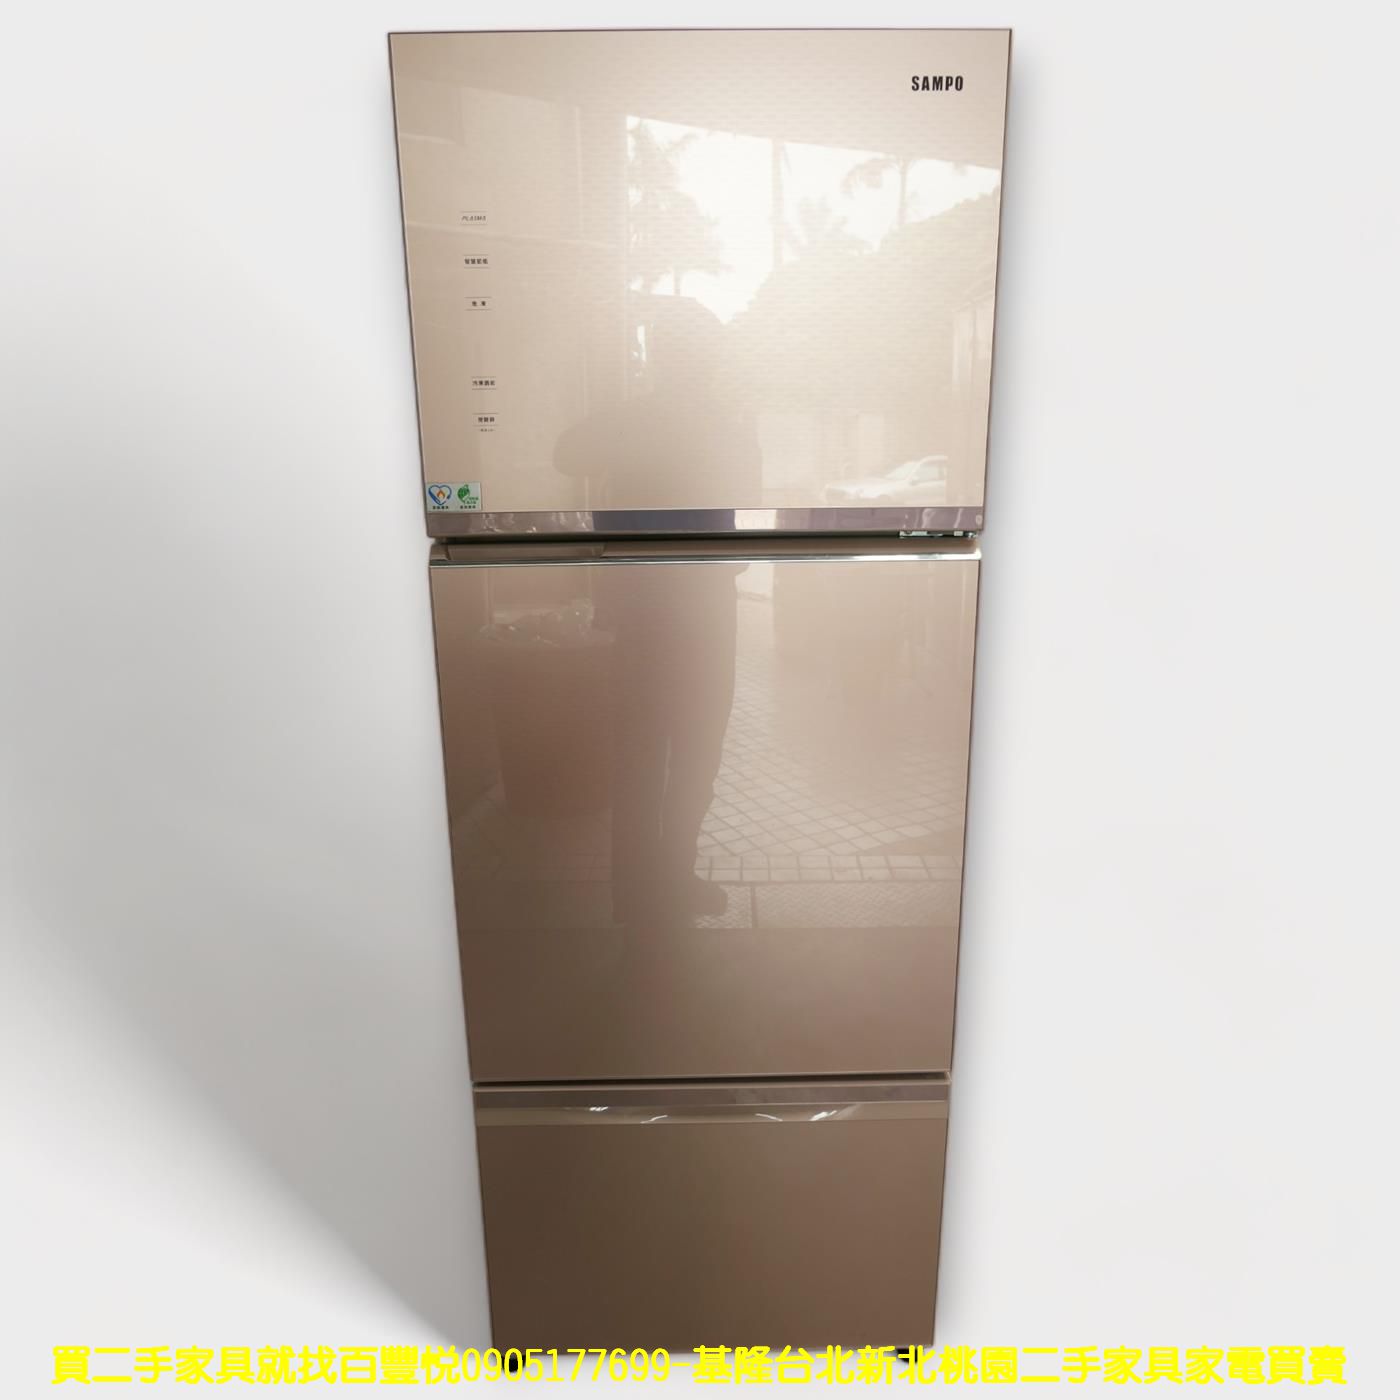 二手冰箱 聲寶 455公升 變頻一級 三門冰箱 大家電 中古家電 中古電器 1